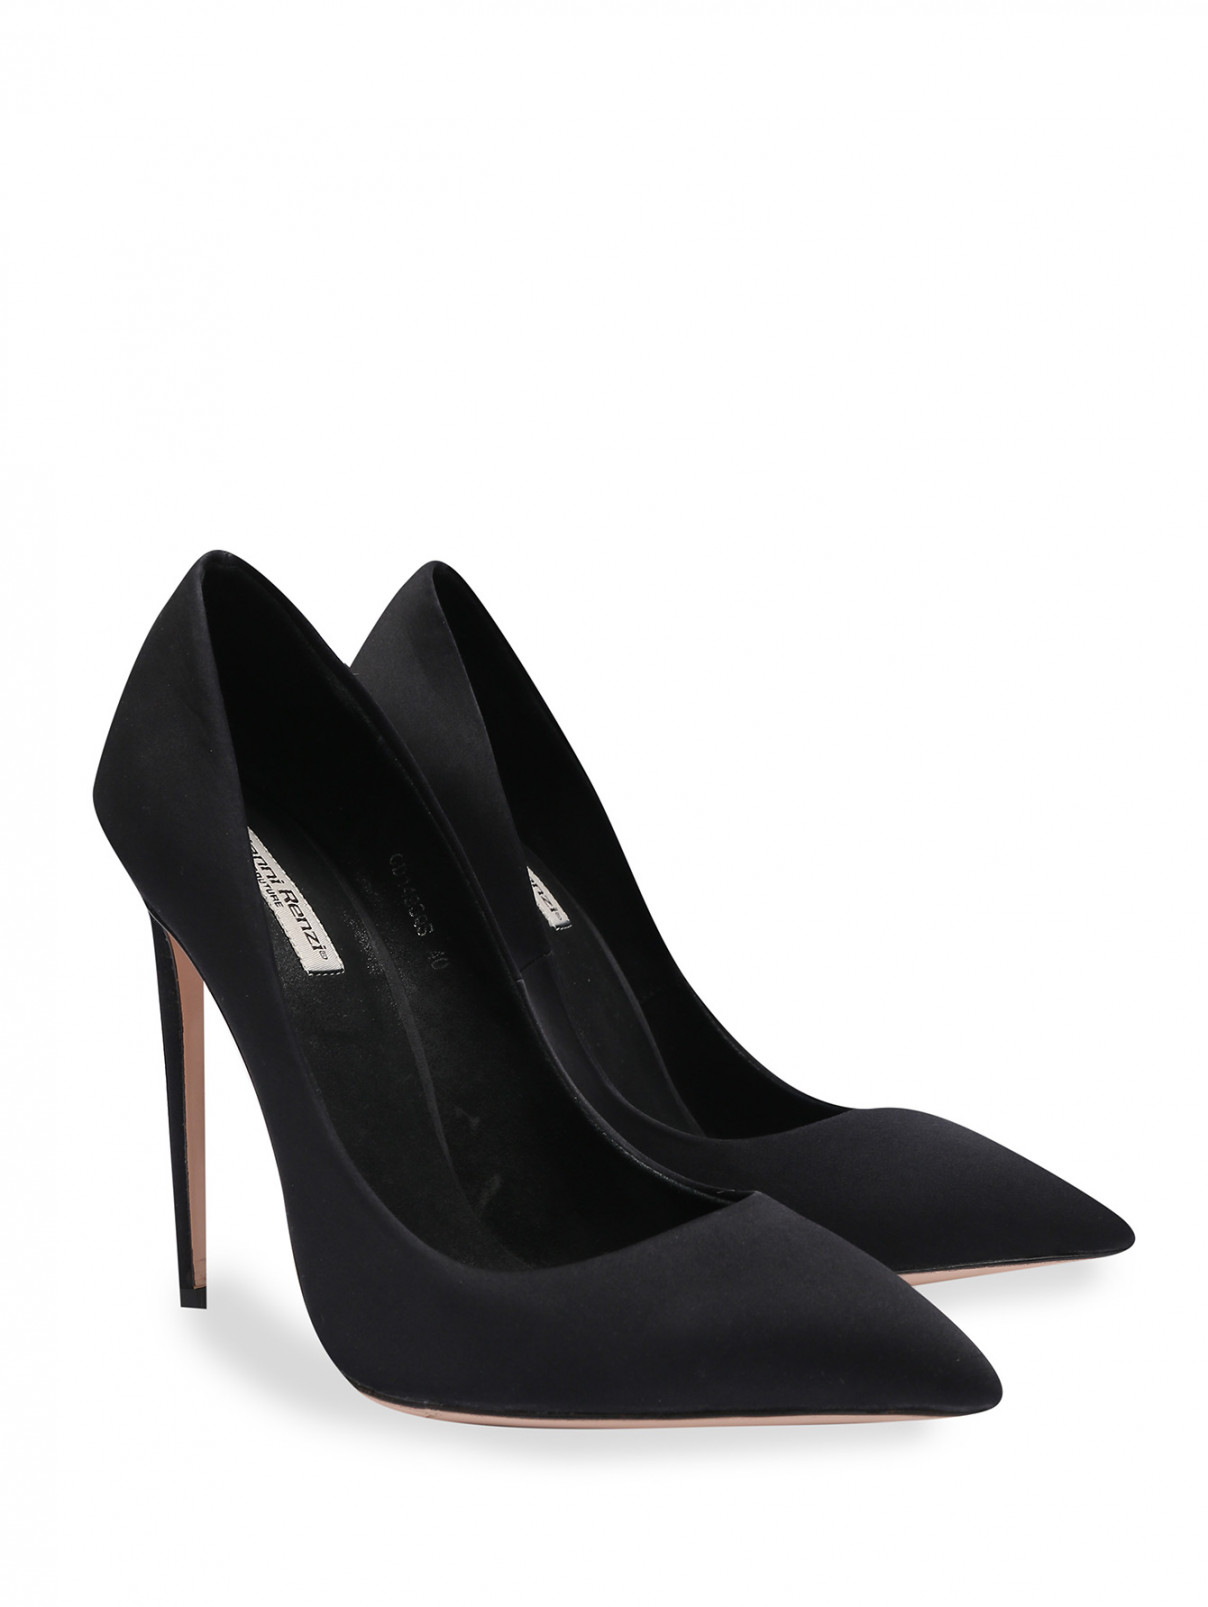 Туфли из текстиля на высоком каблуке Gianni Renzi Couture  –  Общий вид